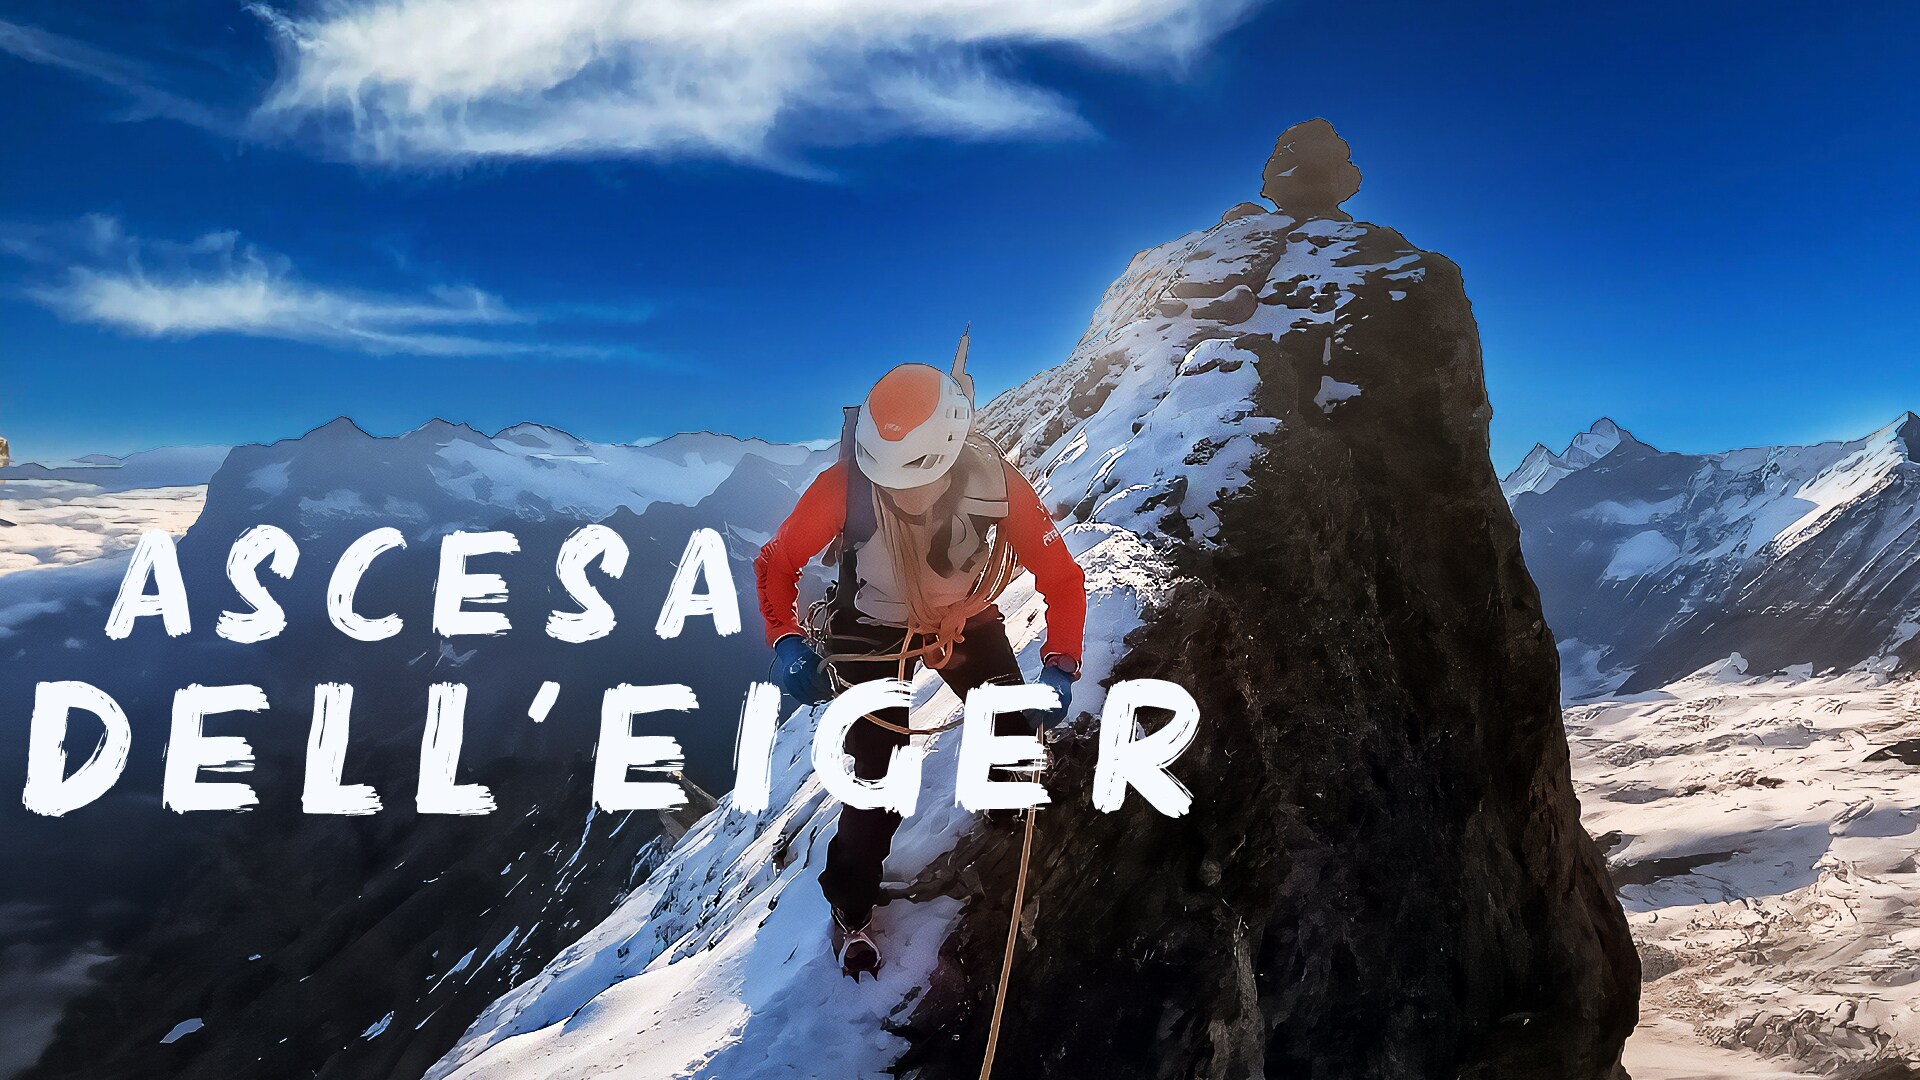 Ascesa dell'Eiger